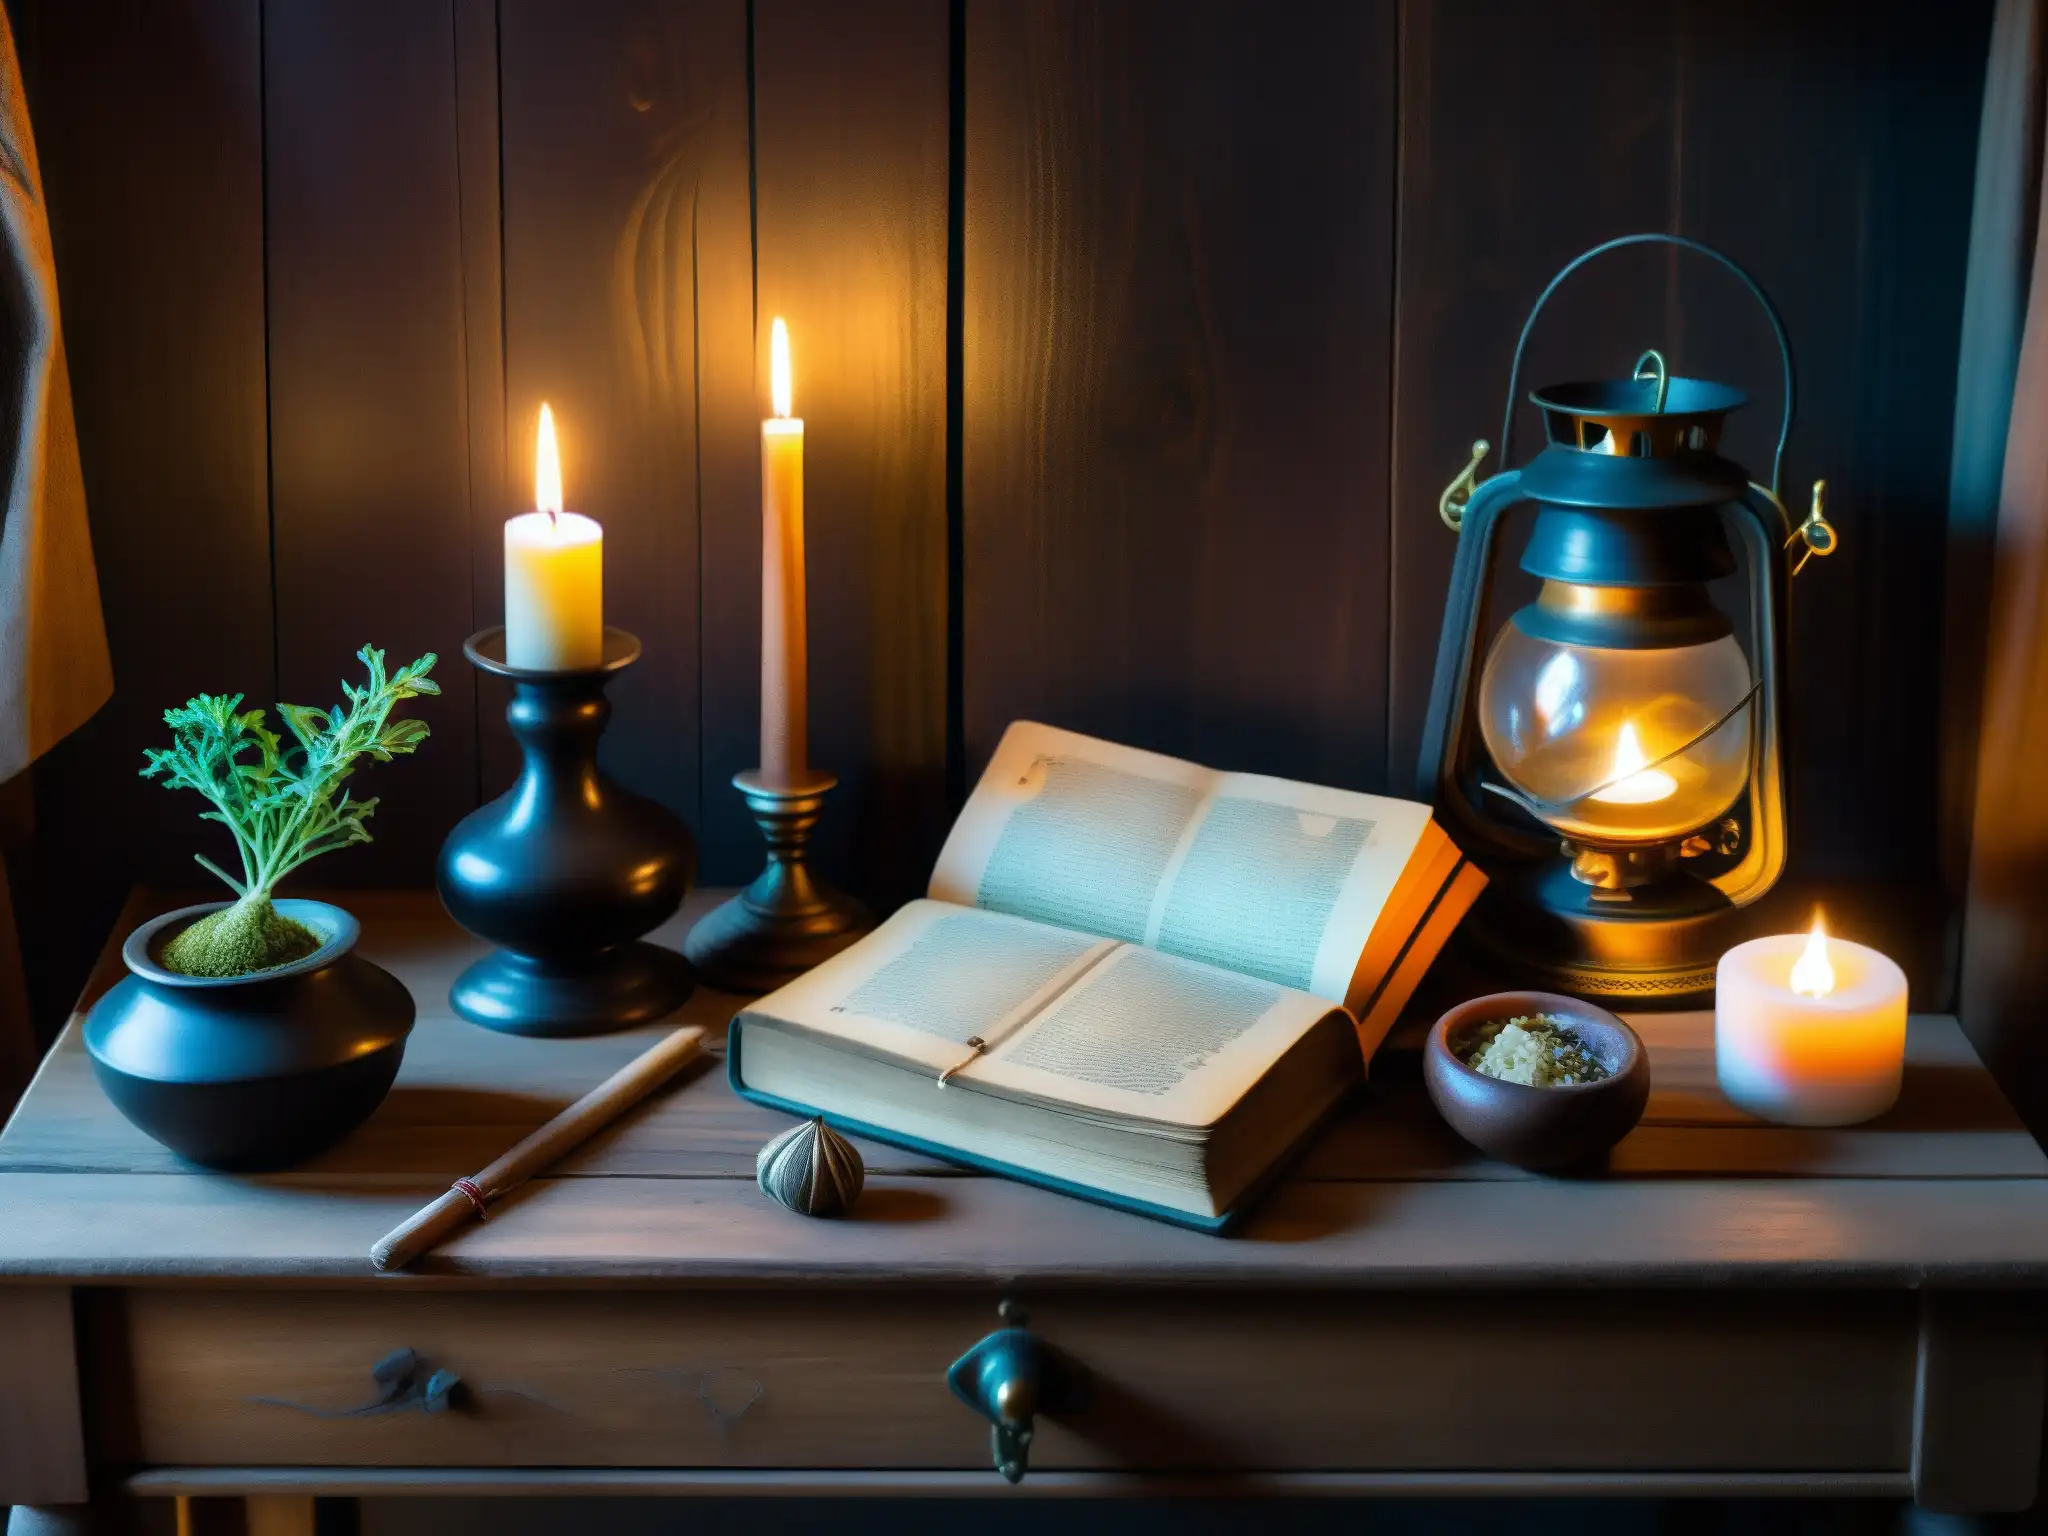 Una habitación misteriosa iluminada por la luna llena, con objetos de brujería en la América colonial sobre una mesa de madera envejecida